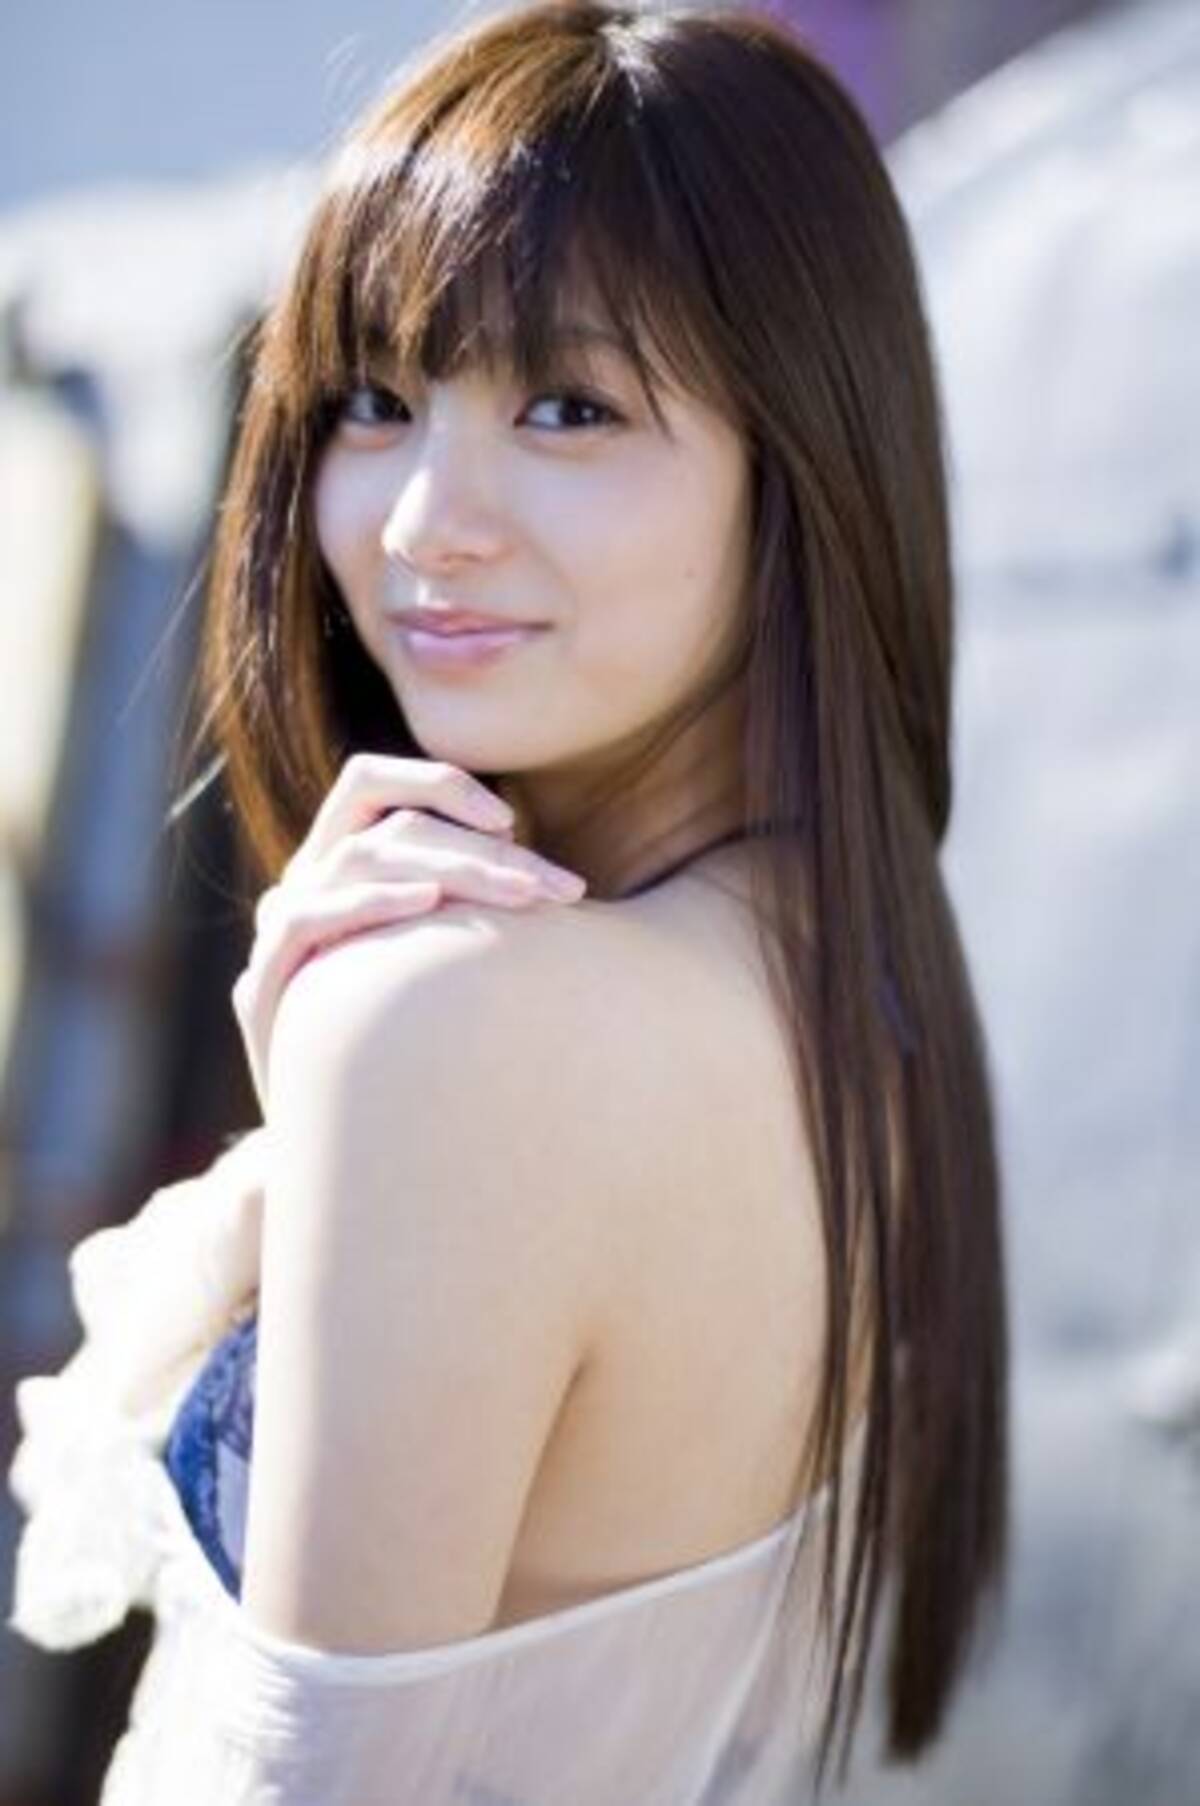 モデル 女優として輝きを放つ新川優愛の かわいすぎる水着姿 がお宝すぎる 12年12月19日 エキサイトニュース